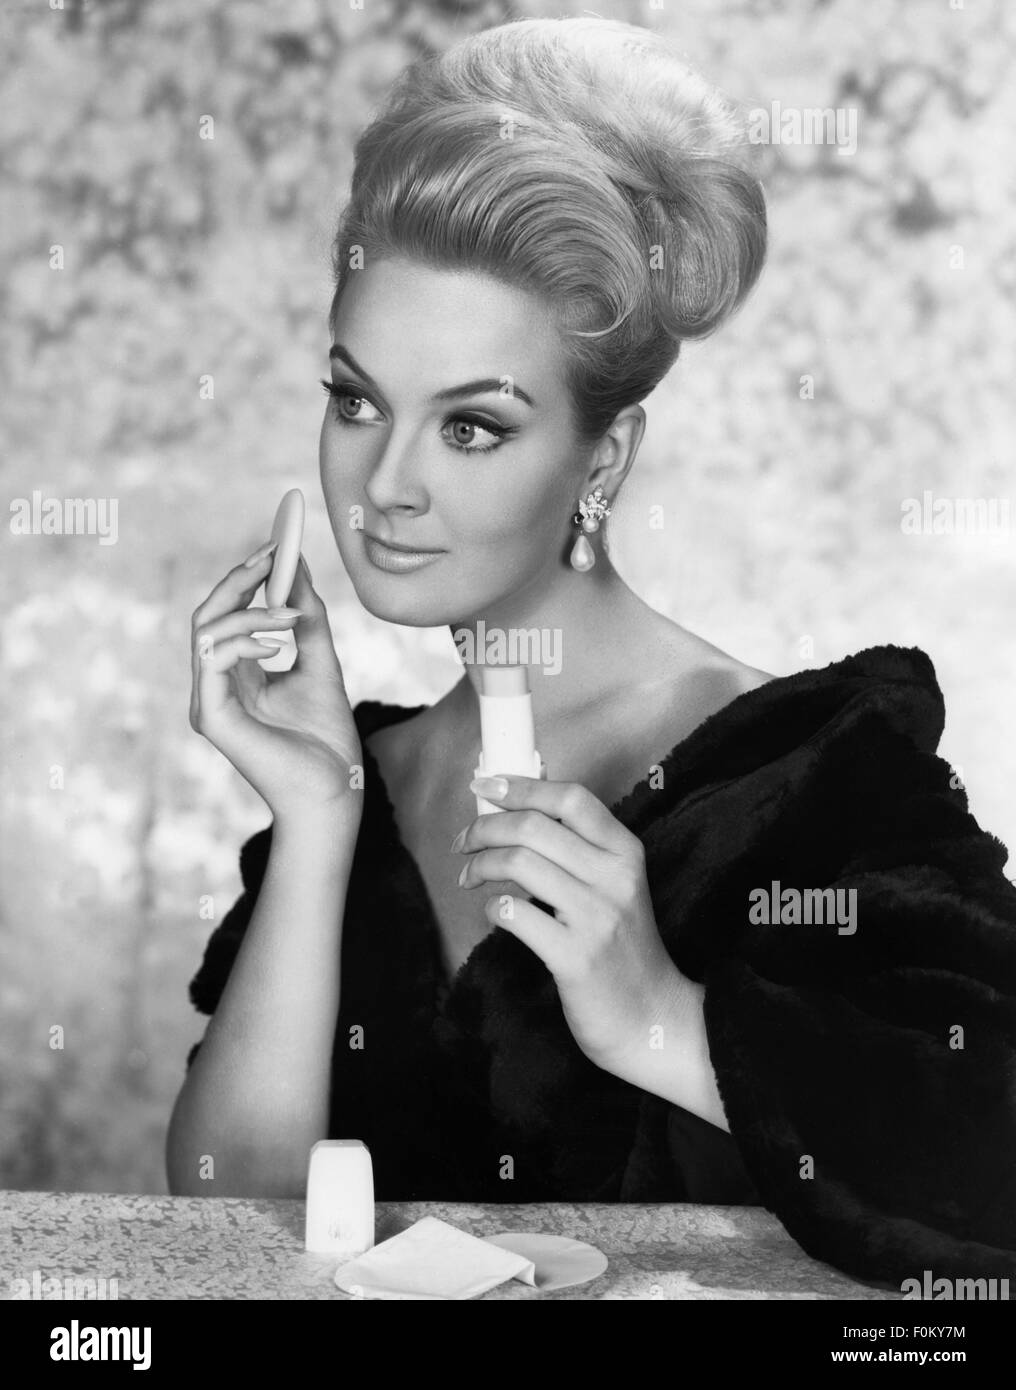 Cosmétiques, femme avec poudre de bouffée, années 1960, droits additionnels-Clearences-non disponible Banque D'Images